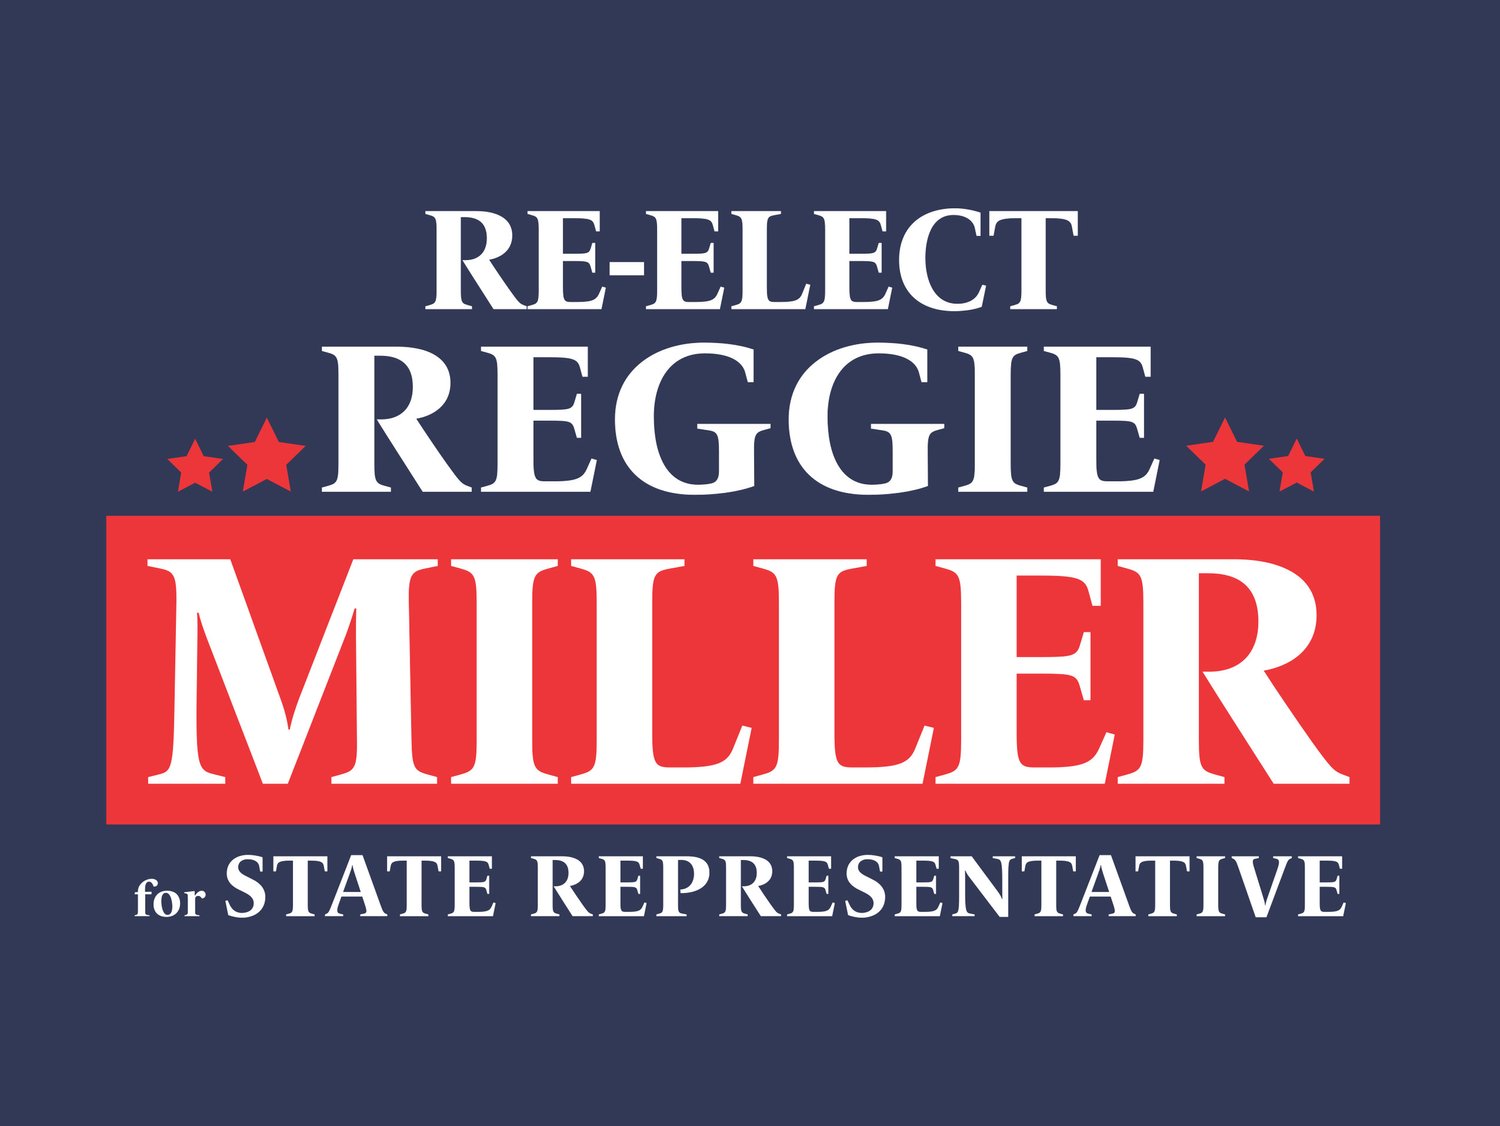 Reggie Miller for State Representative